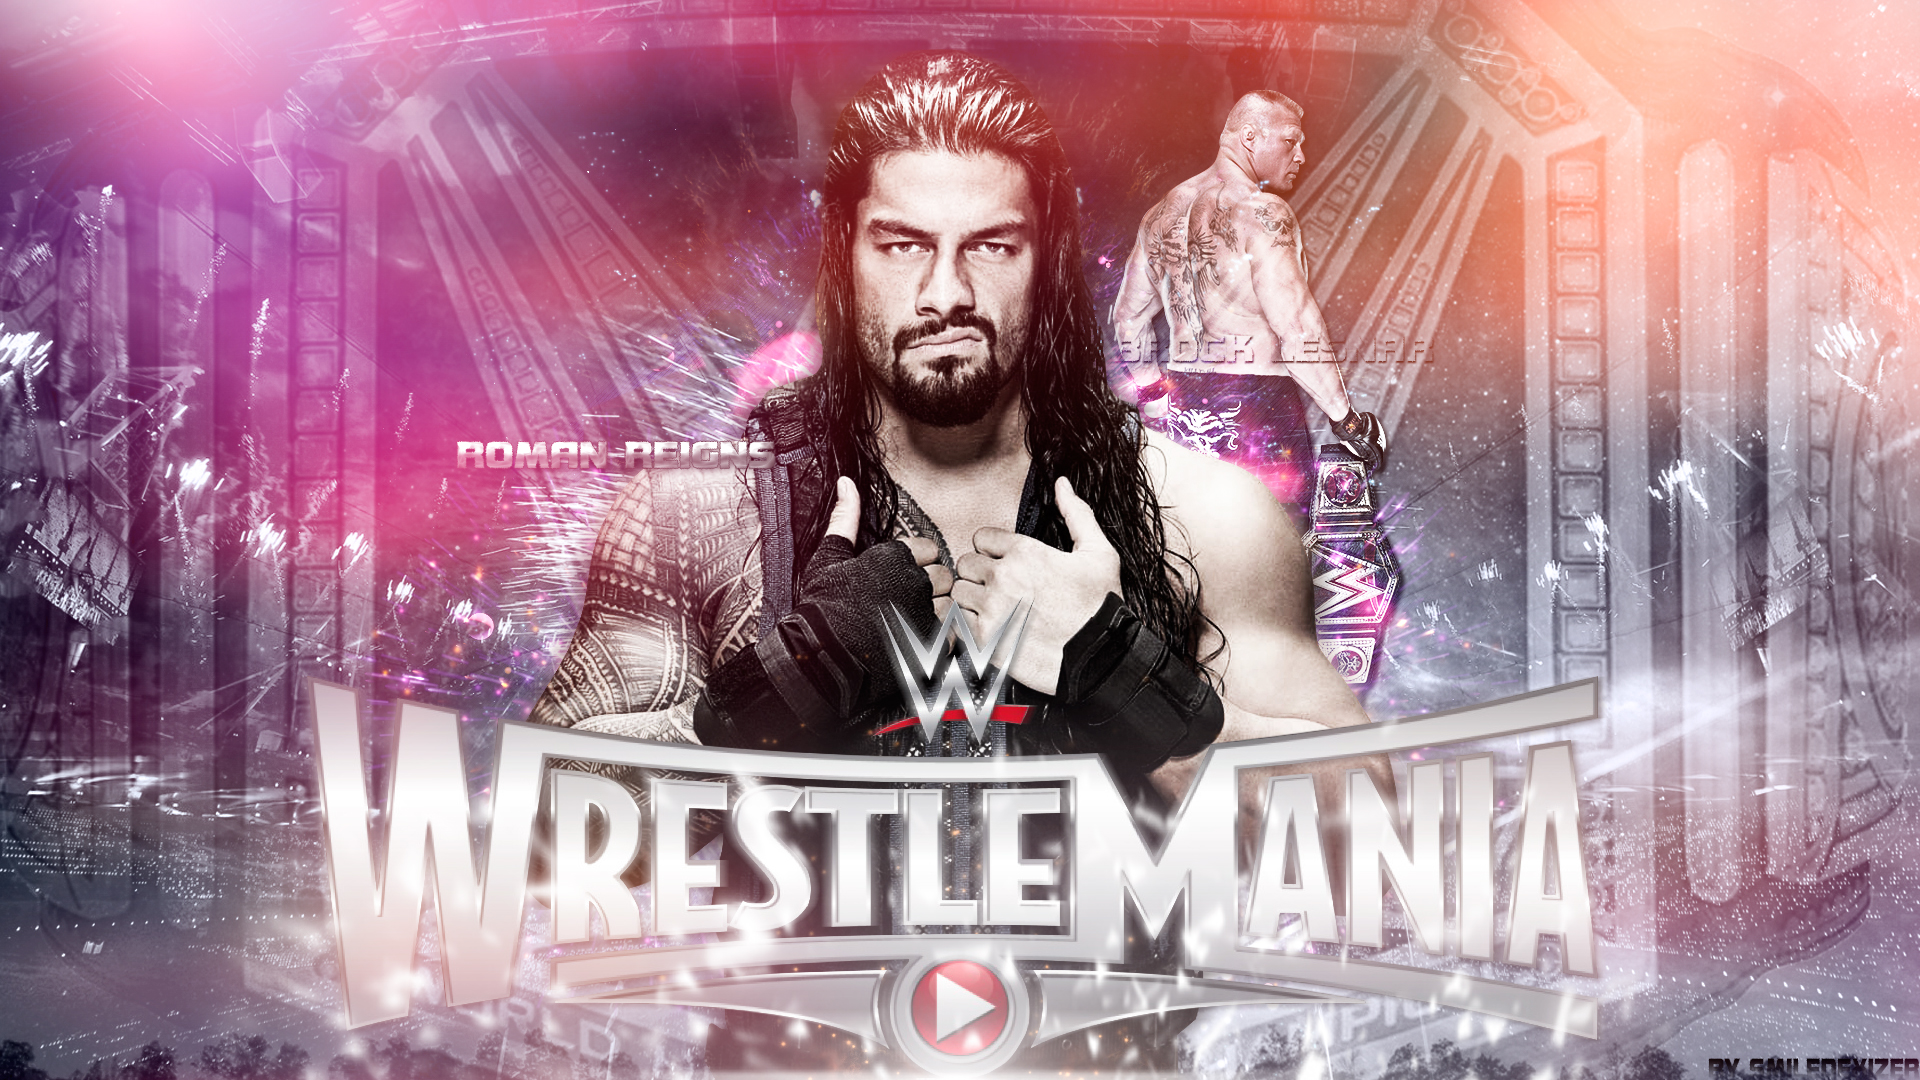 Roman Reigns WWE, WWE Superstar Roman Reigns, Wrestlemania 39 Live, Roman Reigns Wrestlemania appearances, WWE Live Updates, Roman Reigns Record, WWE News